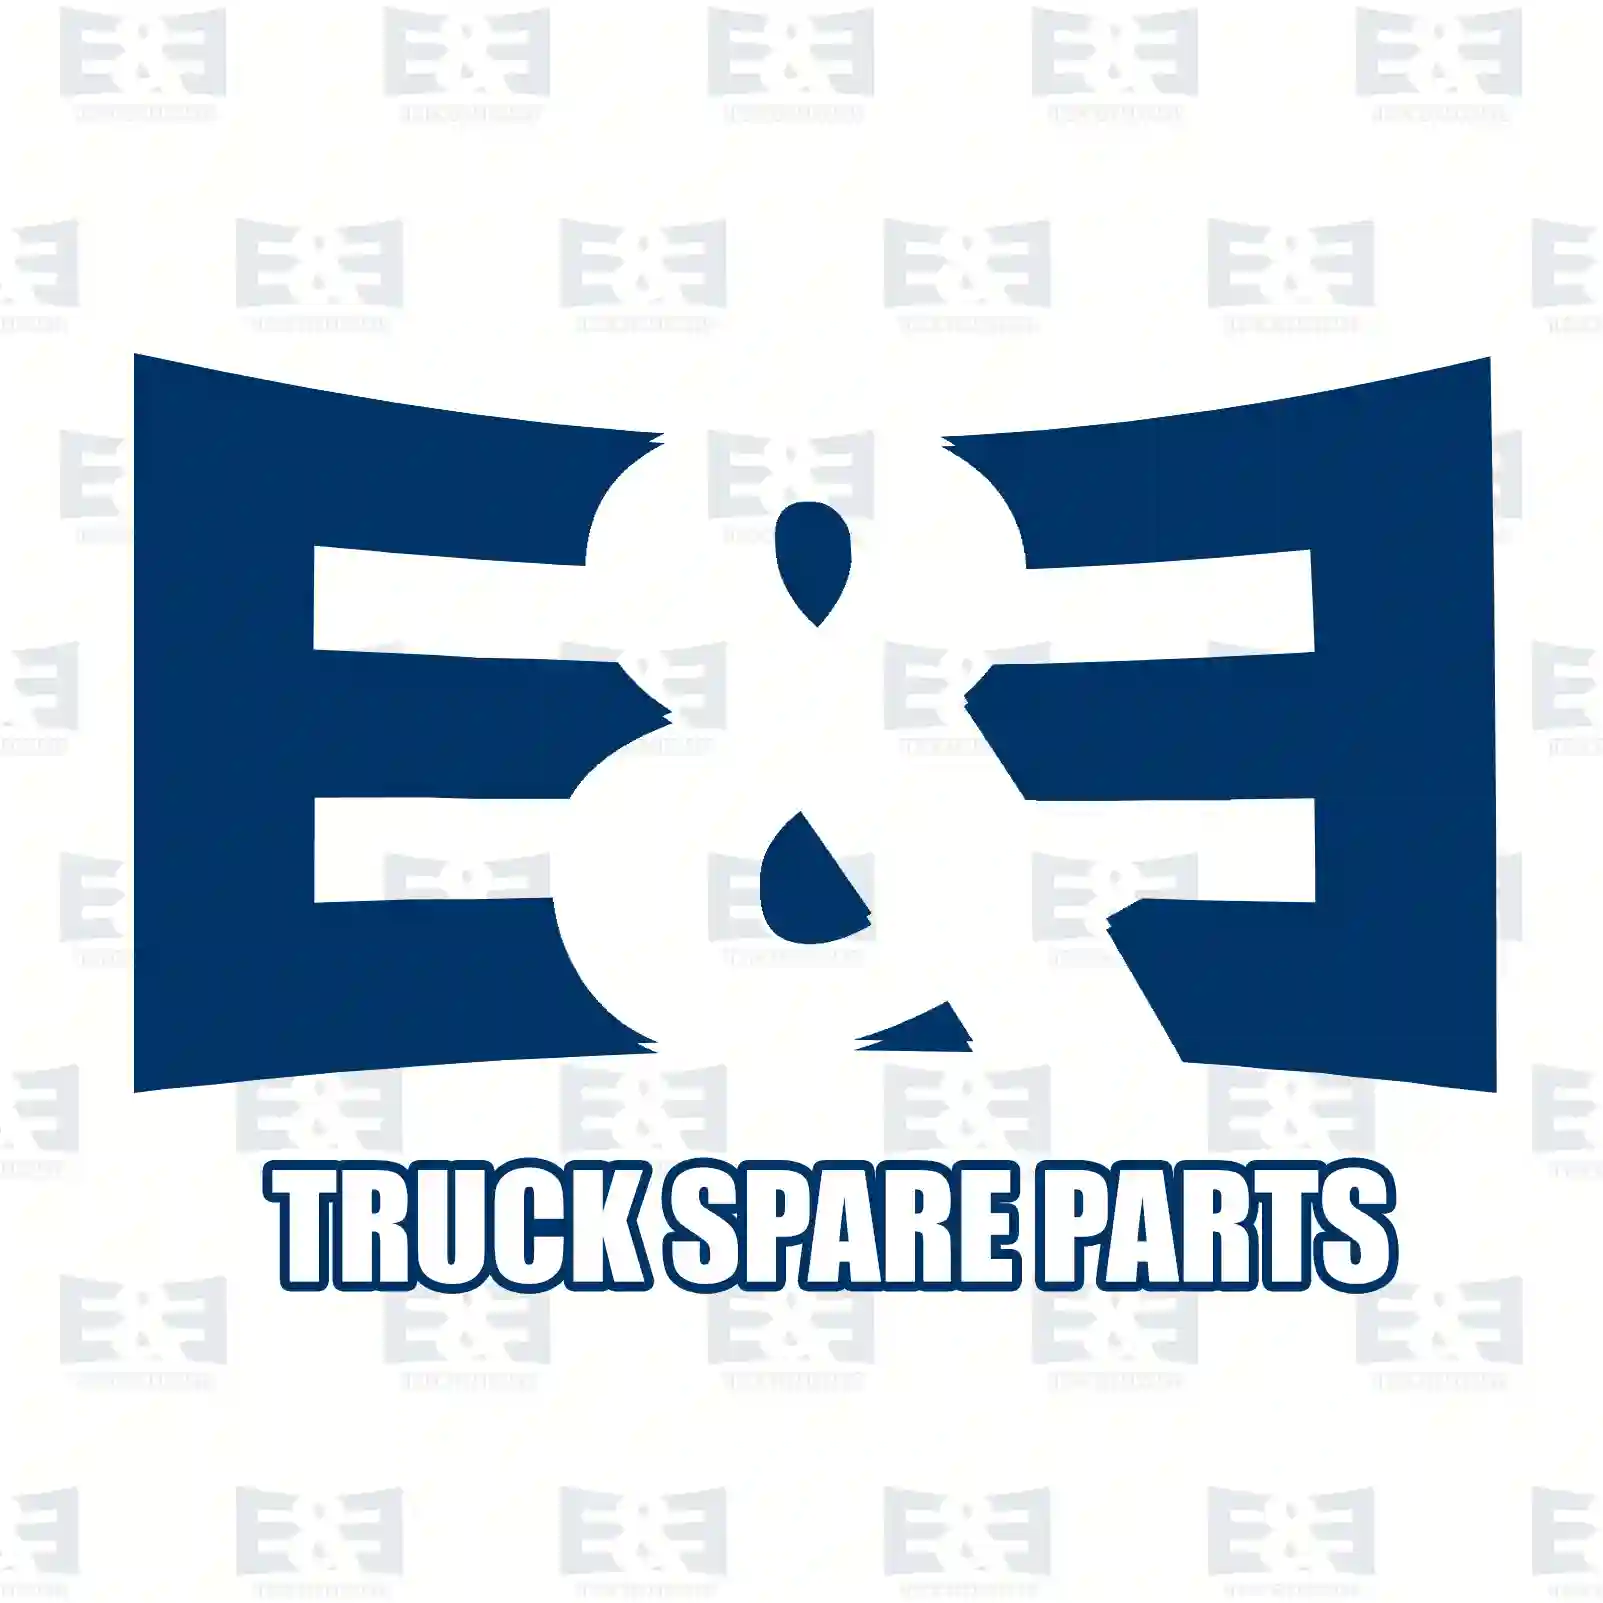 Propeller shaft, 2E2276867, 21017681, 2207023 ||  2E2276867 E&E Truck Spare Parts | Truck Spare Parts, Auotomotive Spare Parts Propeller shaft, 2E2276867, 21017681, 2207023 ||  2E2276867 E&E Truck Spare Parts | Truck Spare Parts, Auotomotive Spare Parts